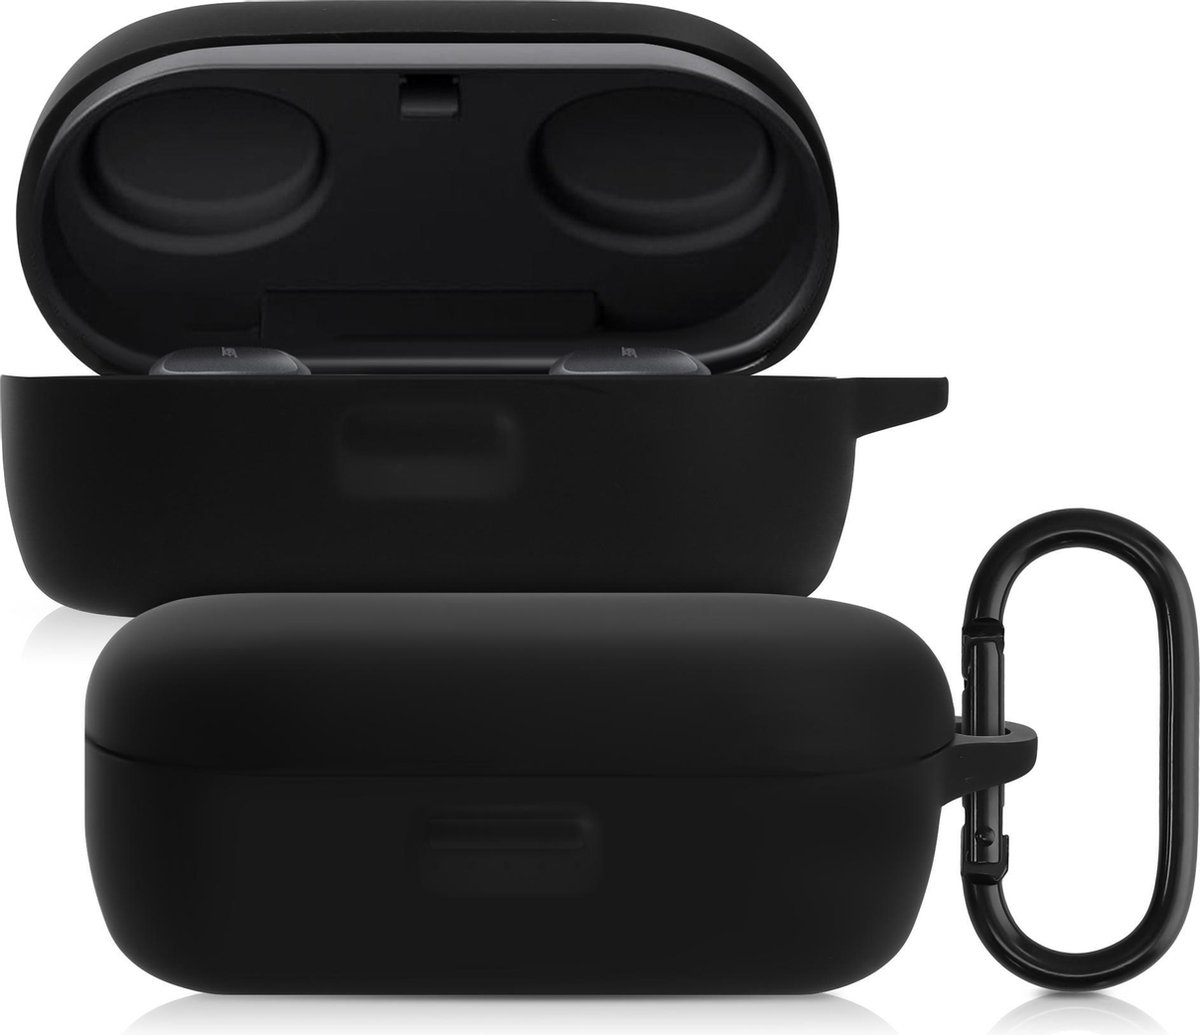 kwmobile Hoes voor Bose QuietComfort Earbuds - Siliconen cover voor oordopjes in zwart